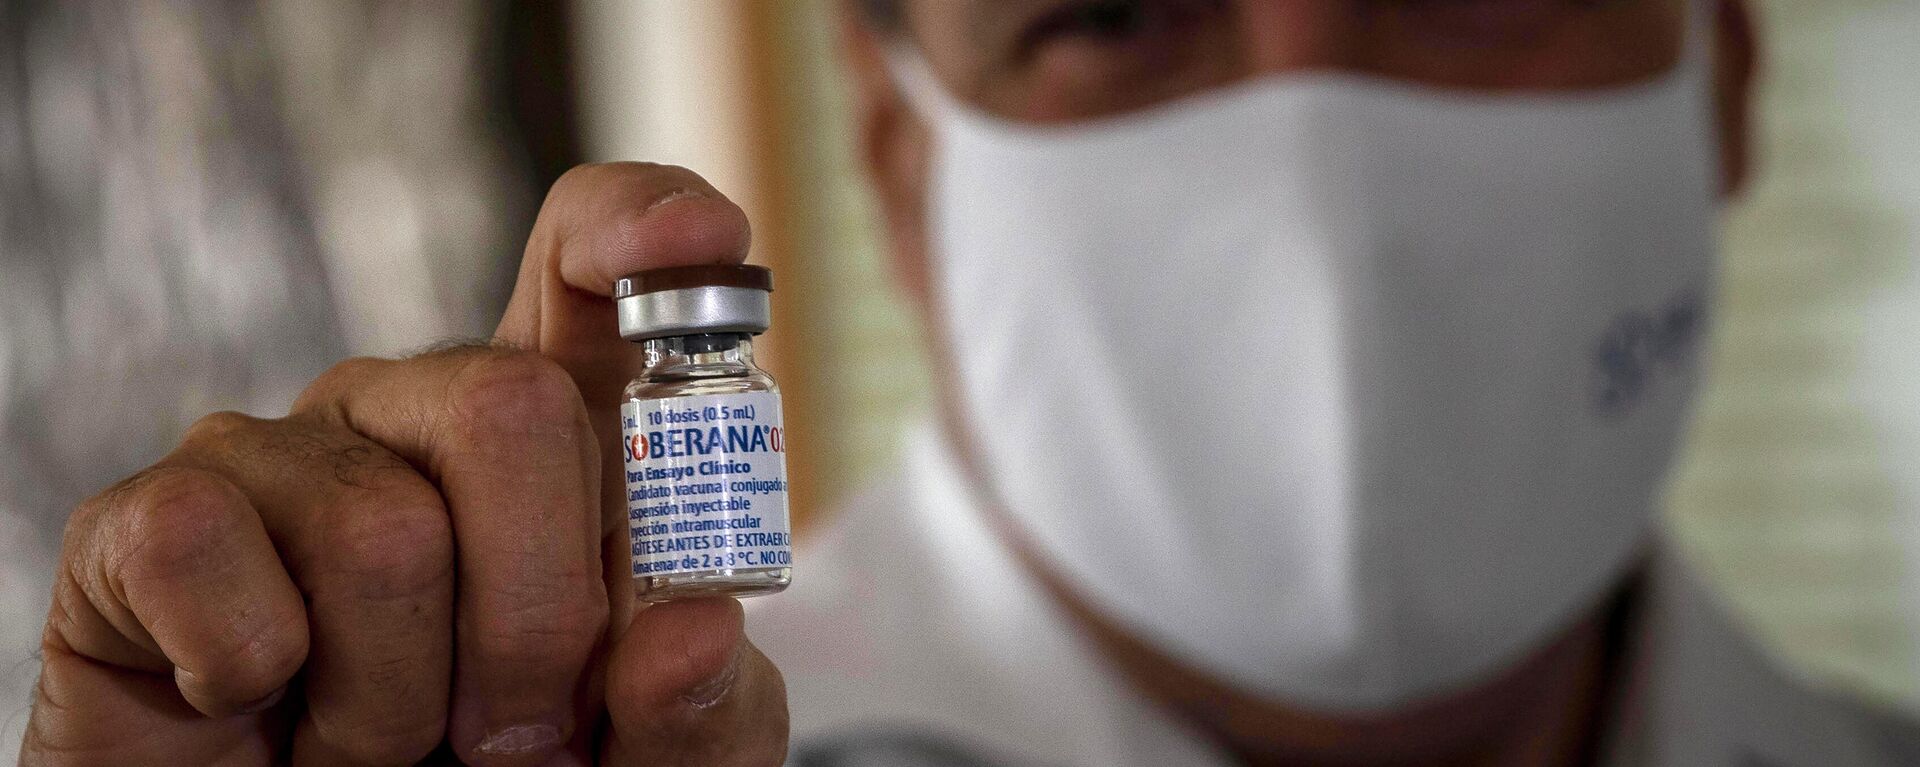 Un médico sostiene la vacuna cubana Soberana 02 contra COVID-19 - Sputnik Mundo, 1920, 22.03.2021